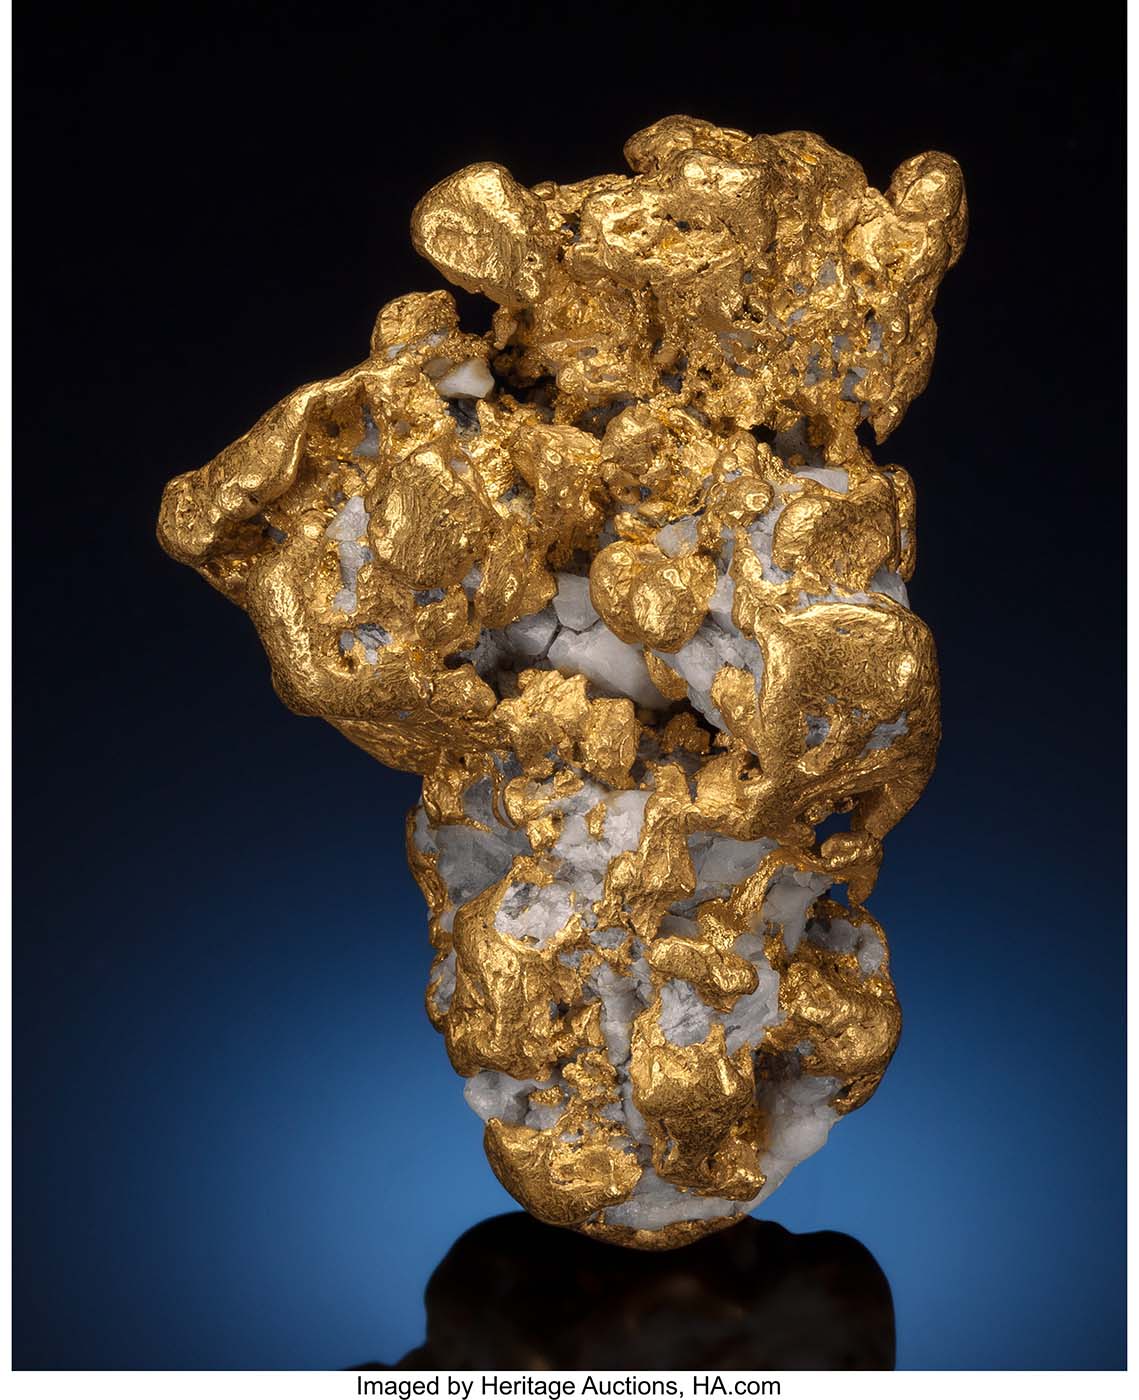 Gold stone. Минерал самородок кварц. Самородное золото минерал. Самородные минералы самородок золота. Кристаллы самородного золота в кварце.